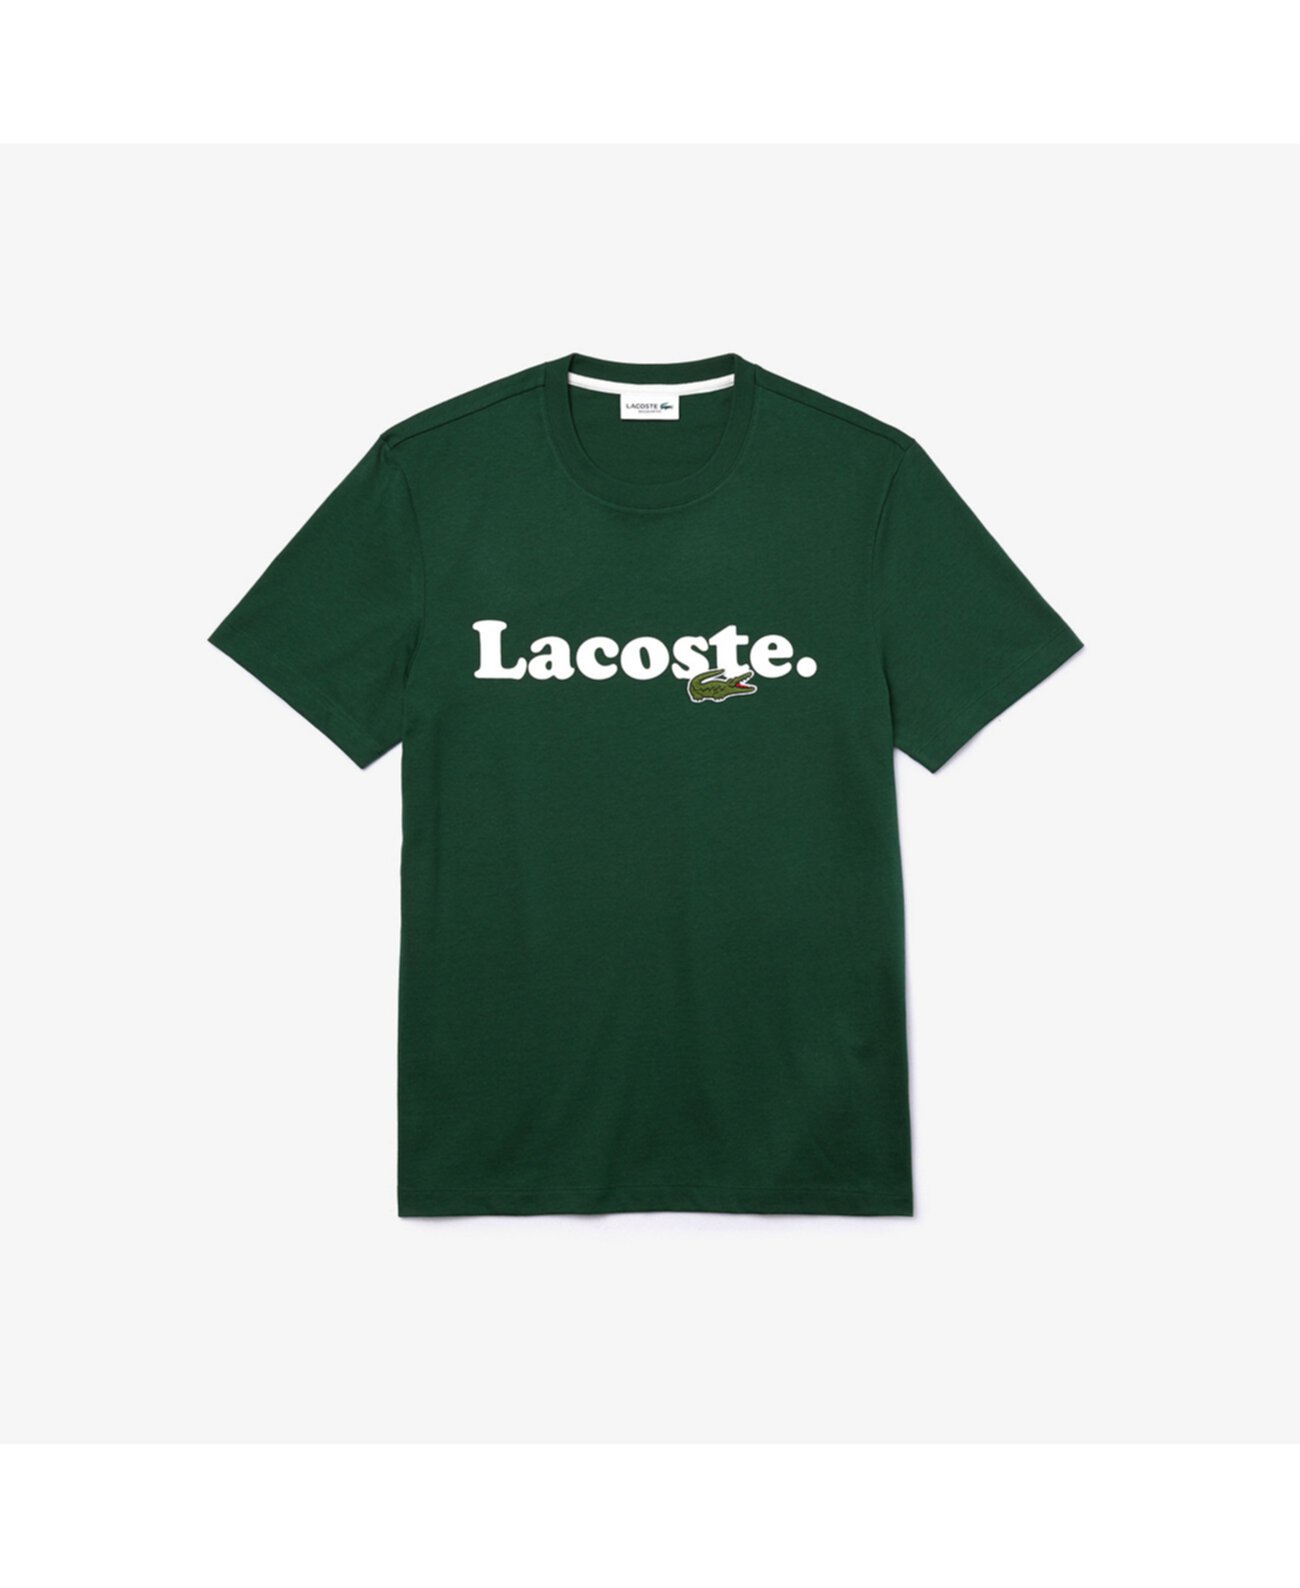 Мужская футболка стандартного кроя с короткими рукавами и круглым вырезом из джерси с логотипом, надписью Lacoste и фирменной вышивкой из крокодиловой кожи Lacoste